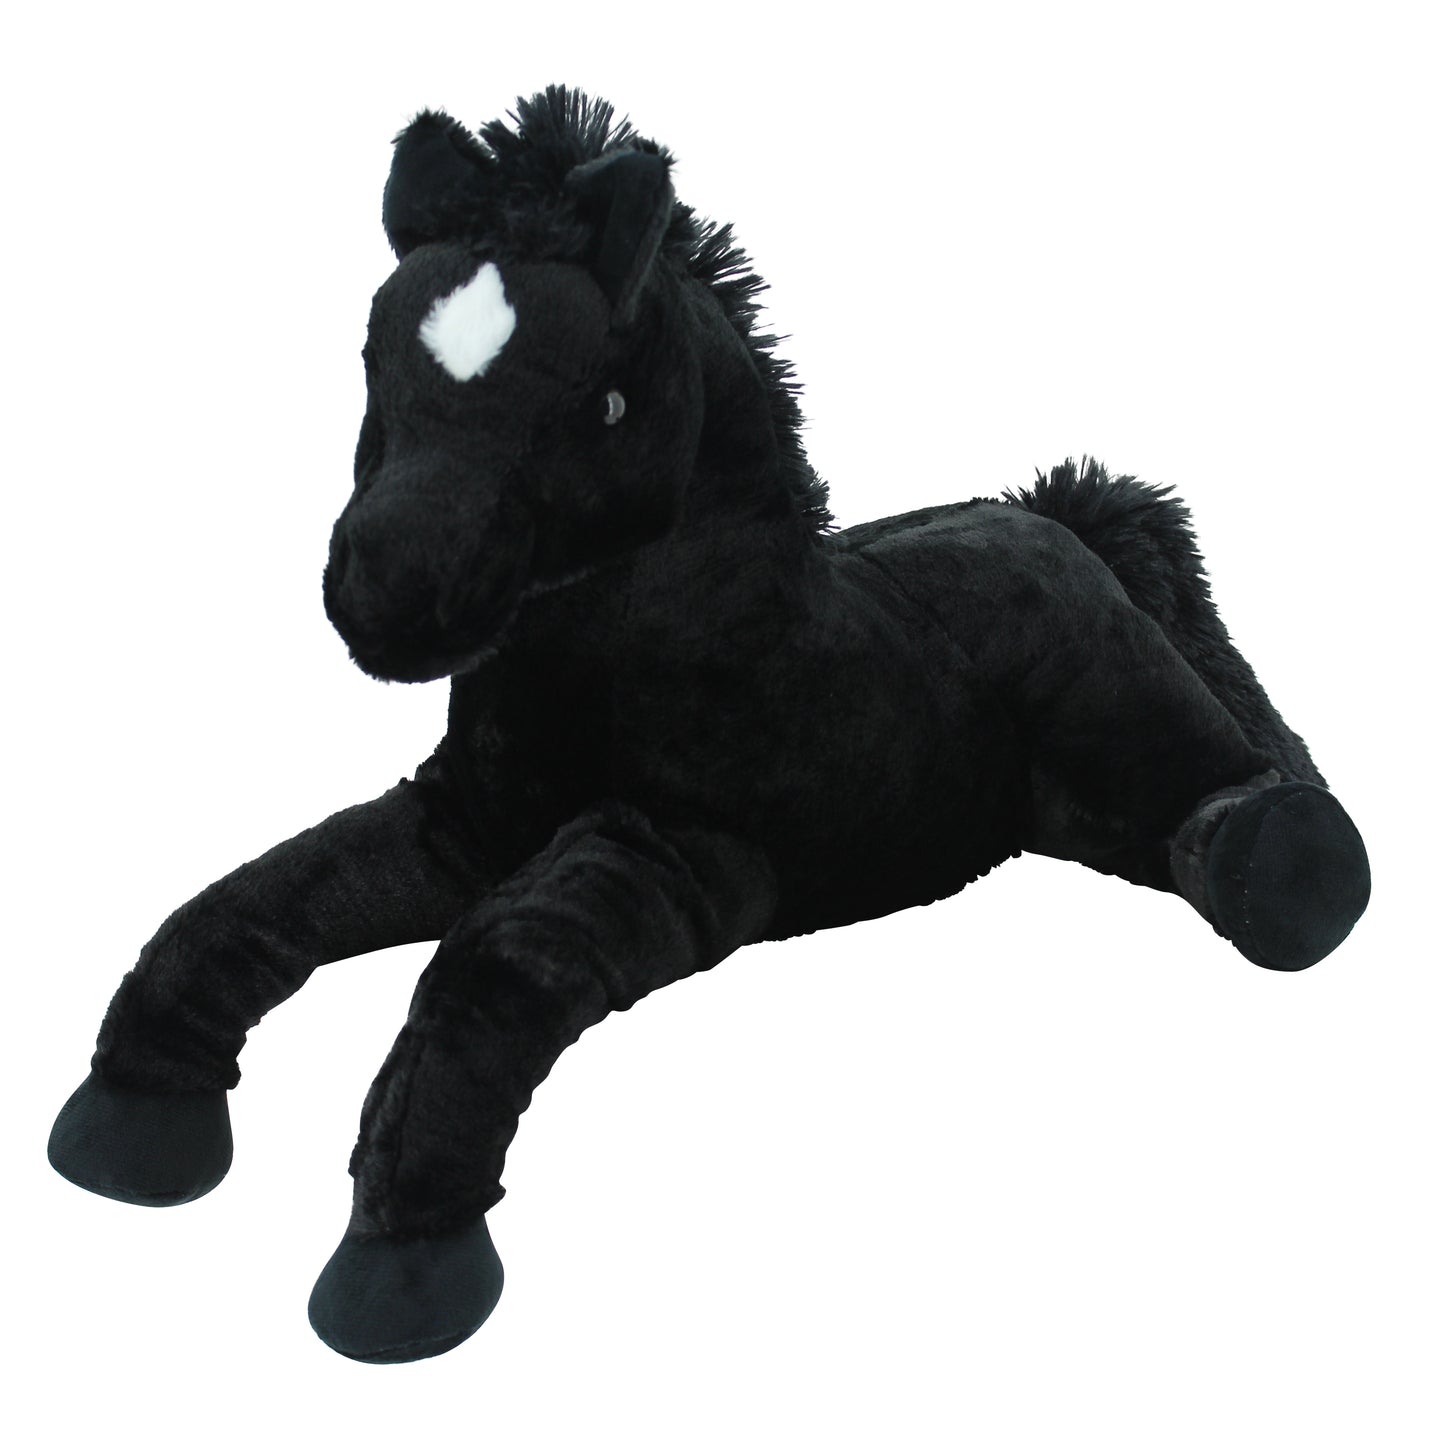 Sweety Toys 5185 knuffel paard veulen zwart knuffel zacht pluche paard liggend